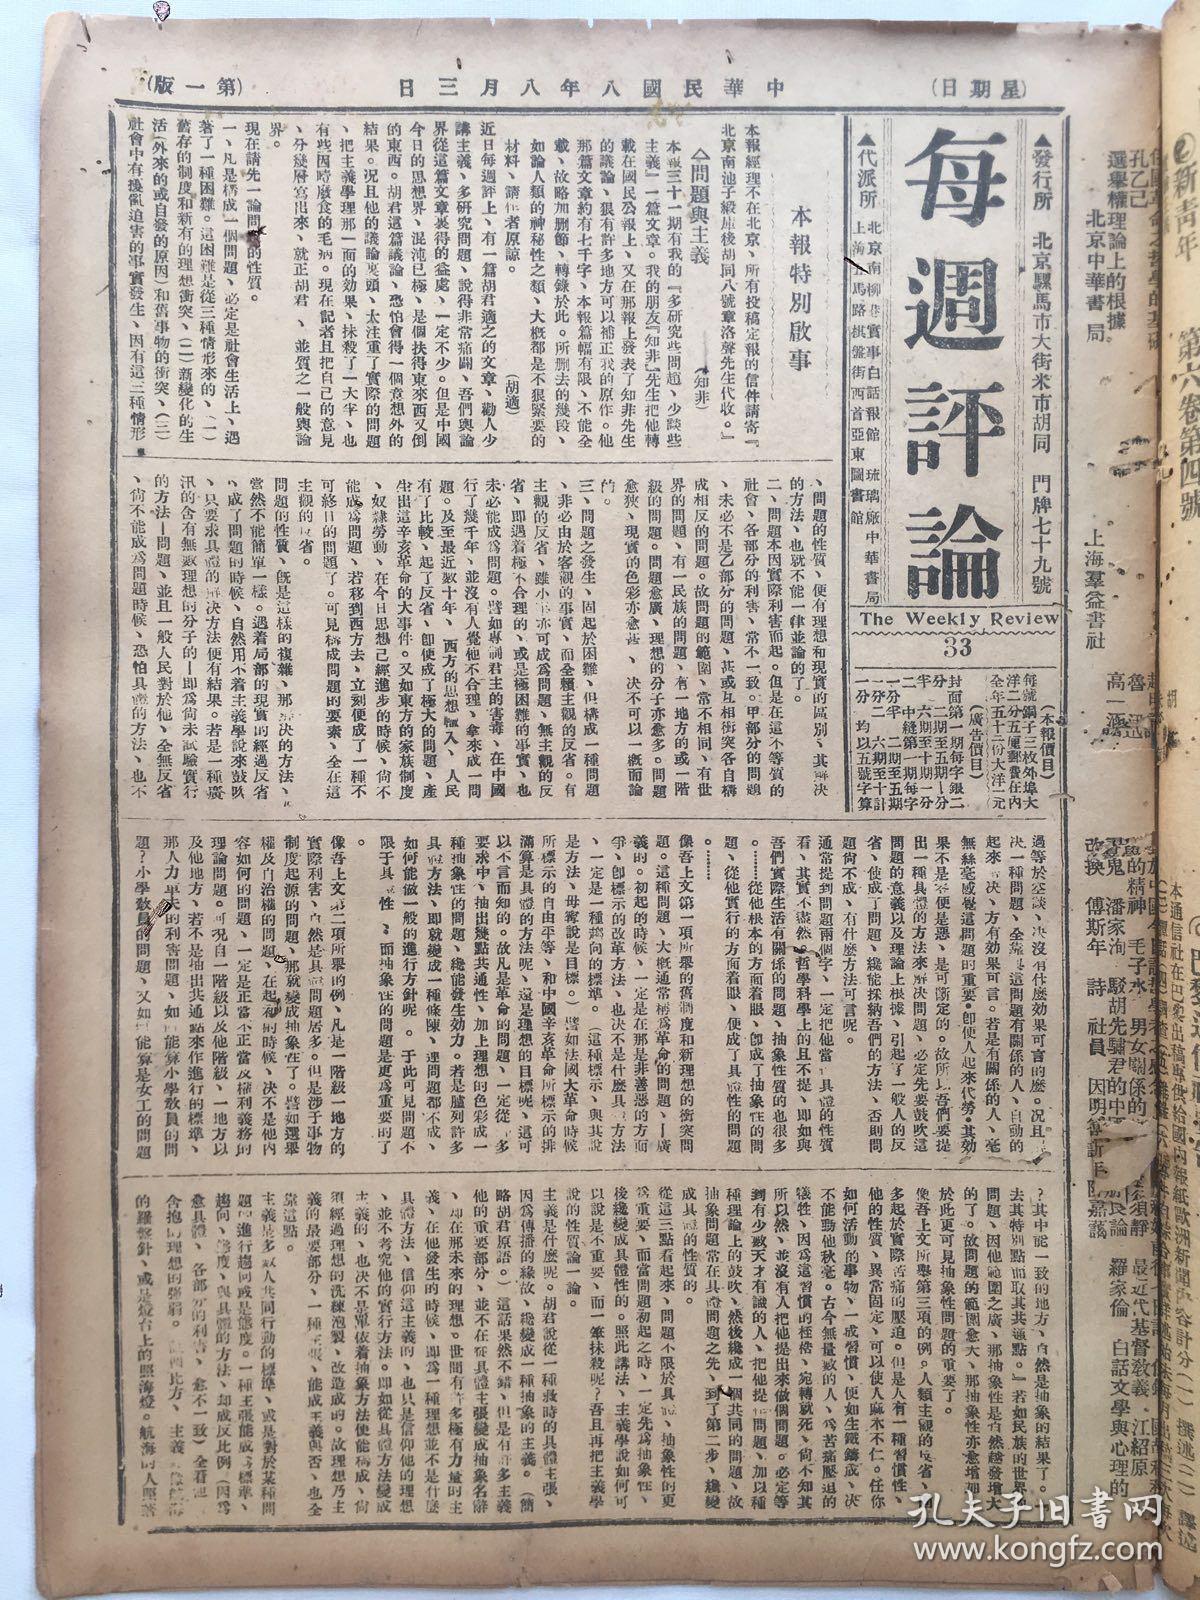 老报纸收藏，1919年《每周评论》，1919年8月3日第33期，8开4版，【问题与主义】【民众运动的目的】